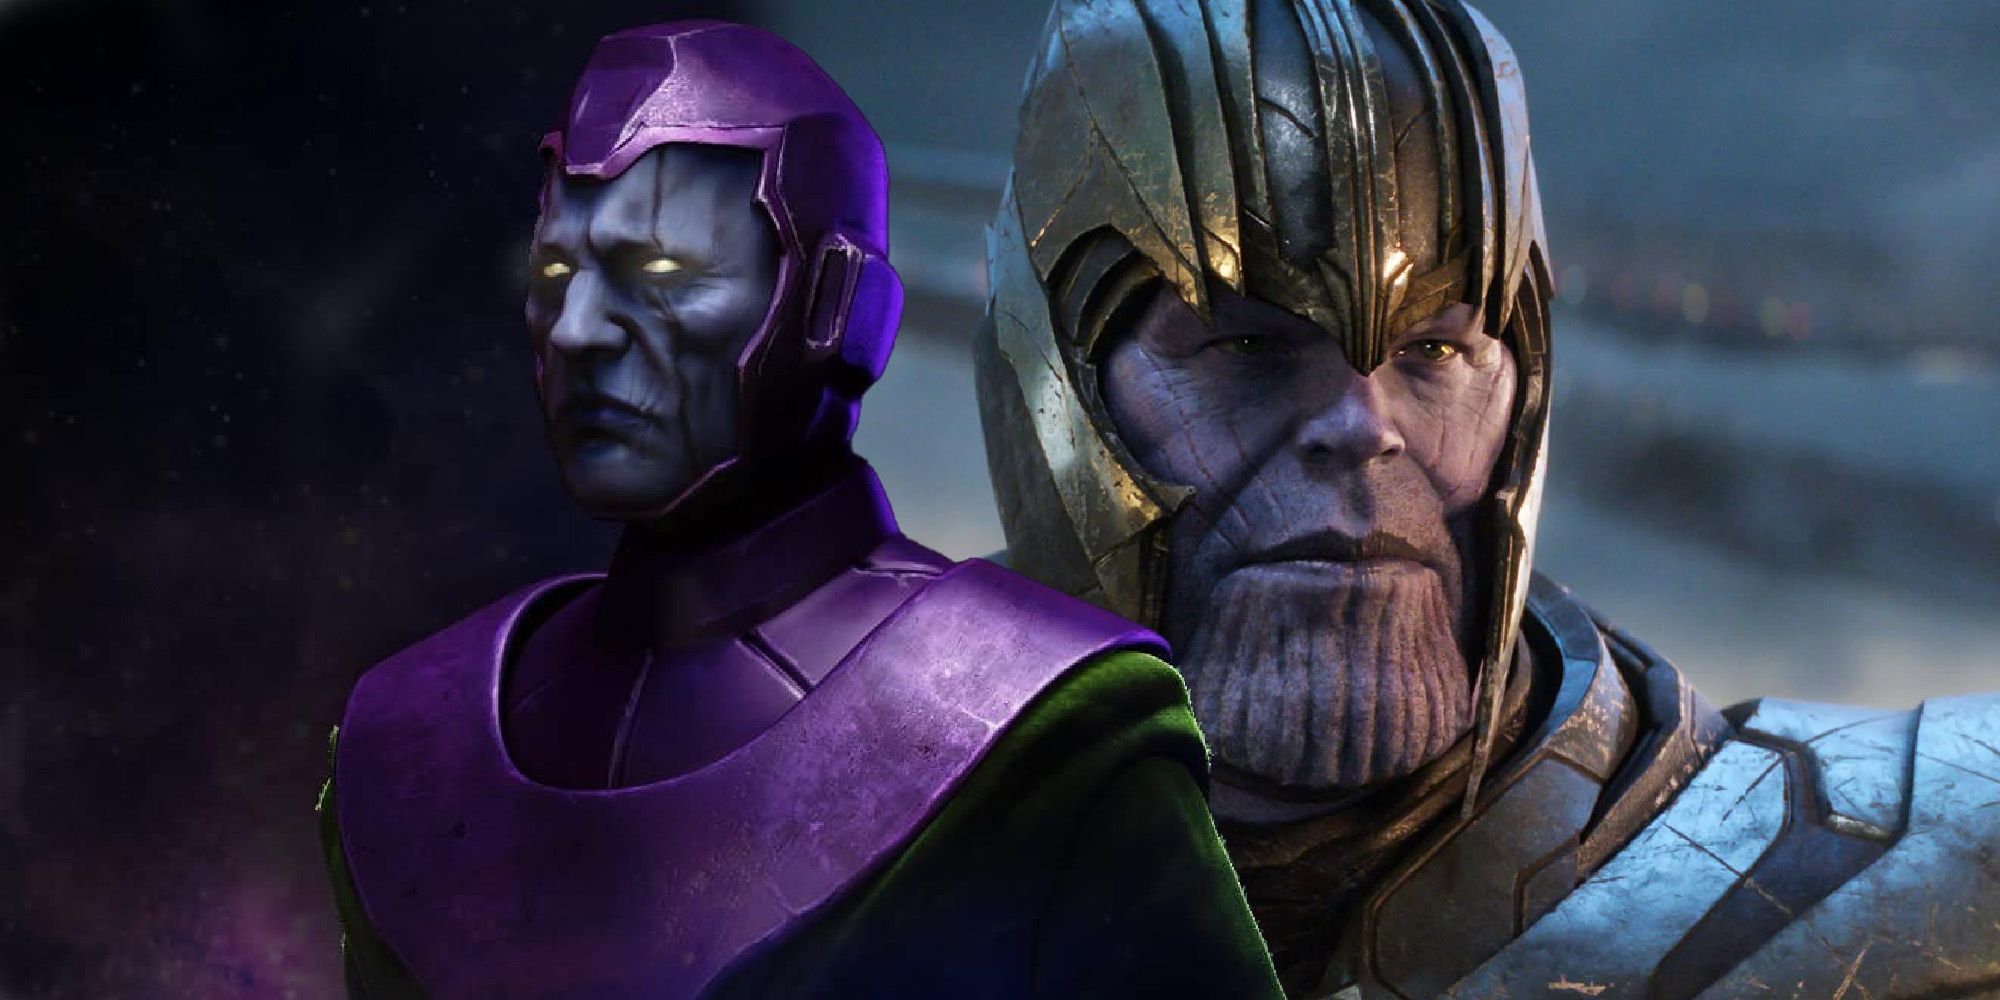 kang the conqueror Thanos Avengers endgame